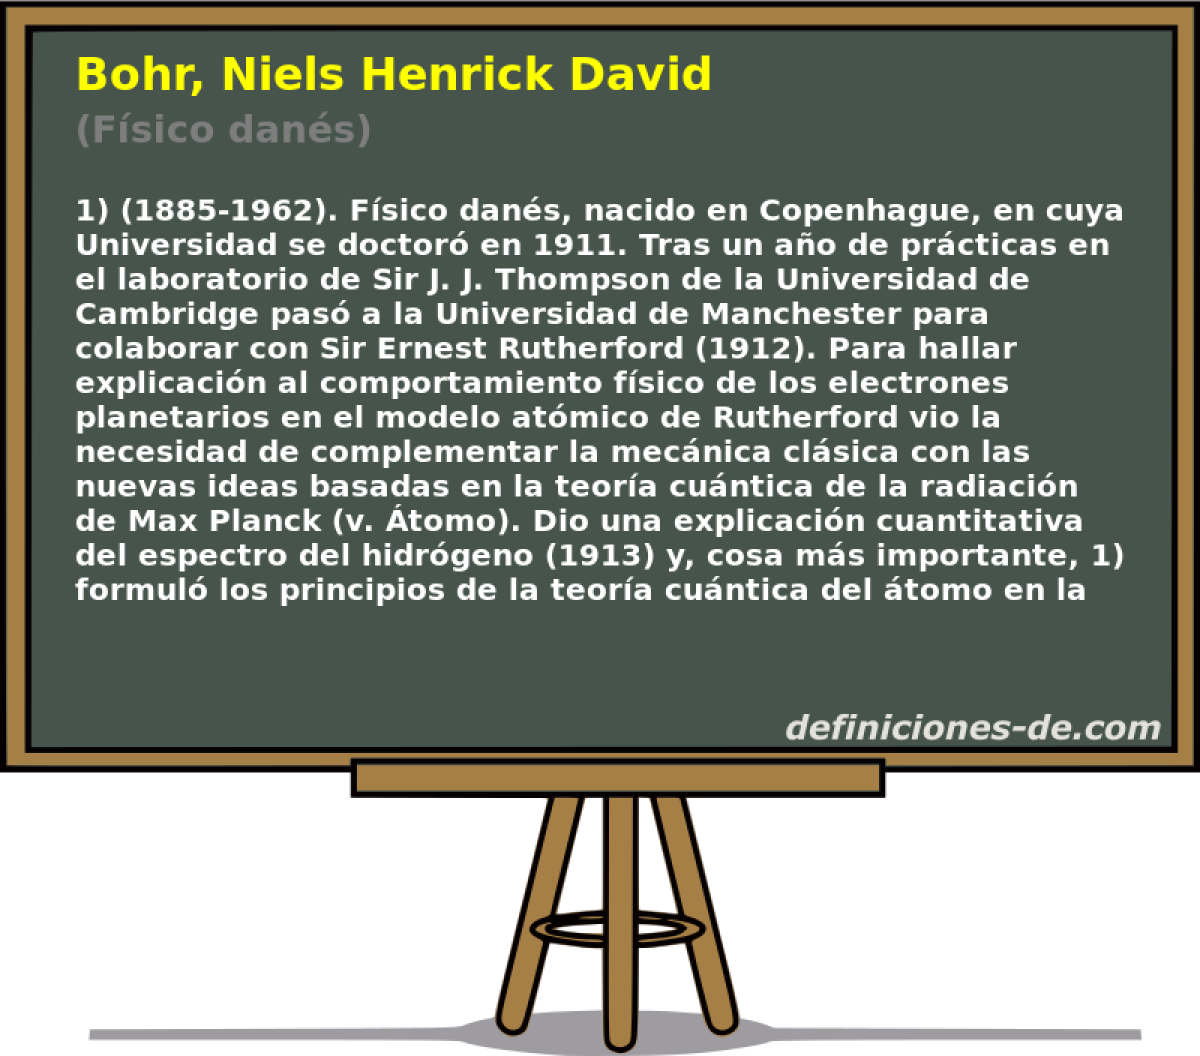 Bohr, Niels Henrick David (Fsico dans)